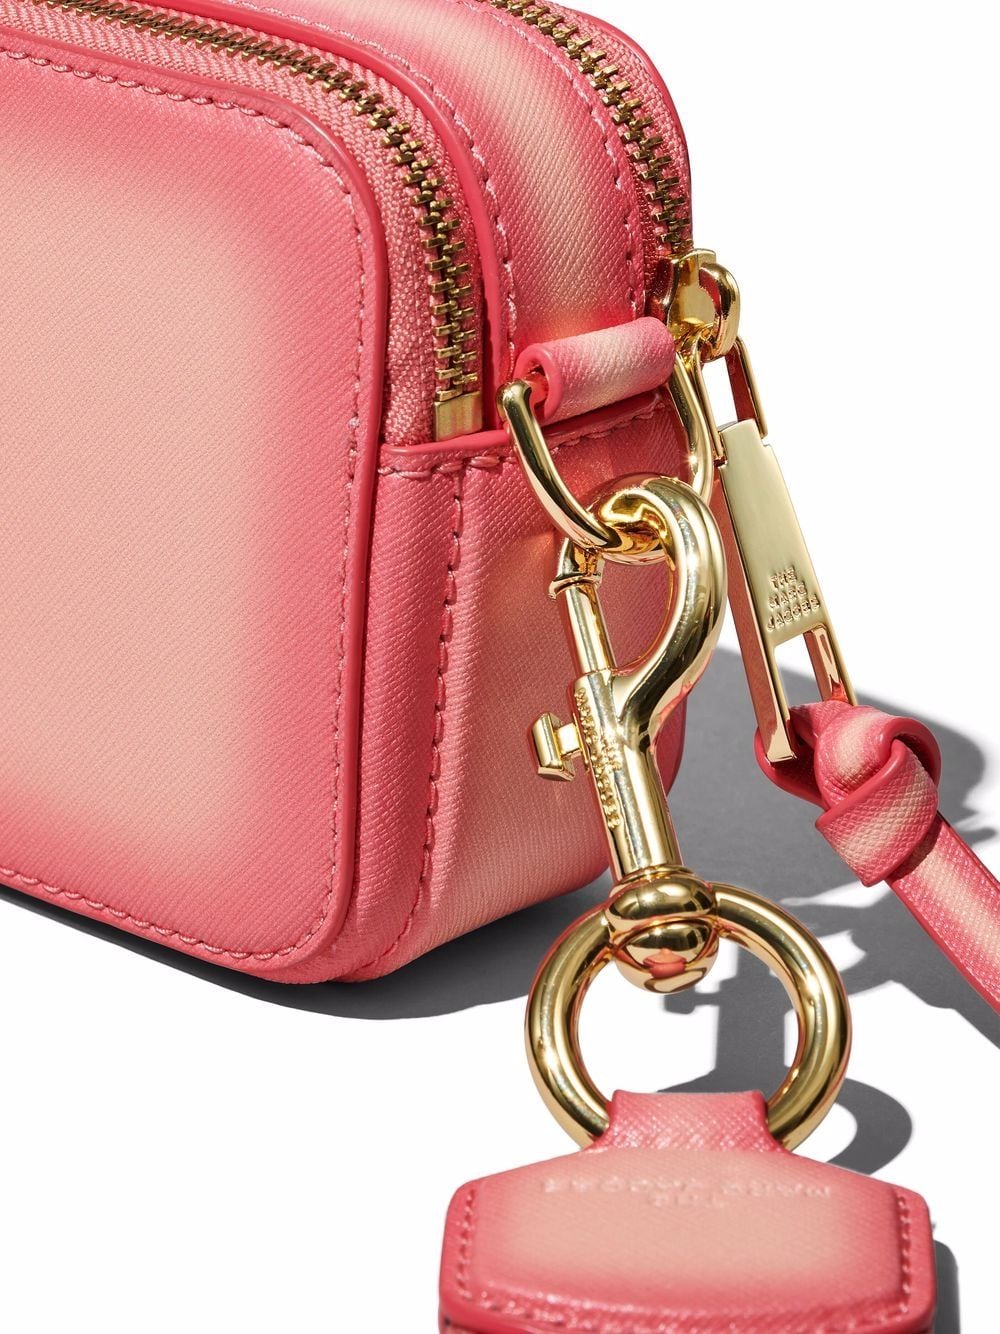 Marc Jacobs Crossbody Snapshot Shoulder Bag blue red pink mini bag